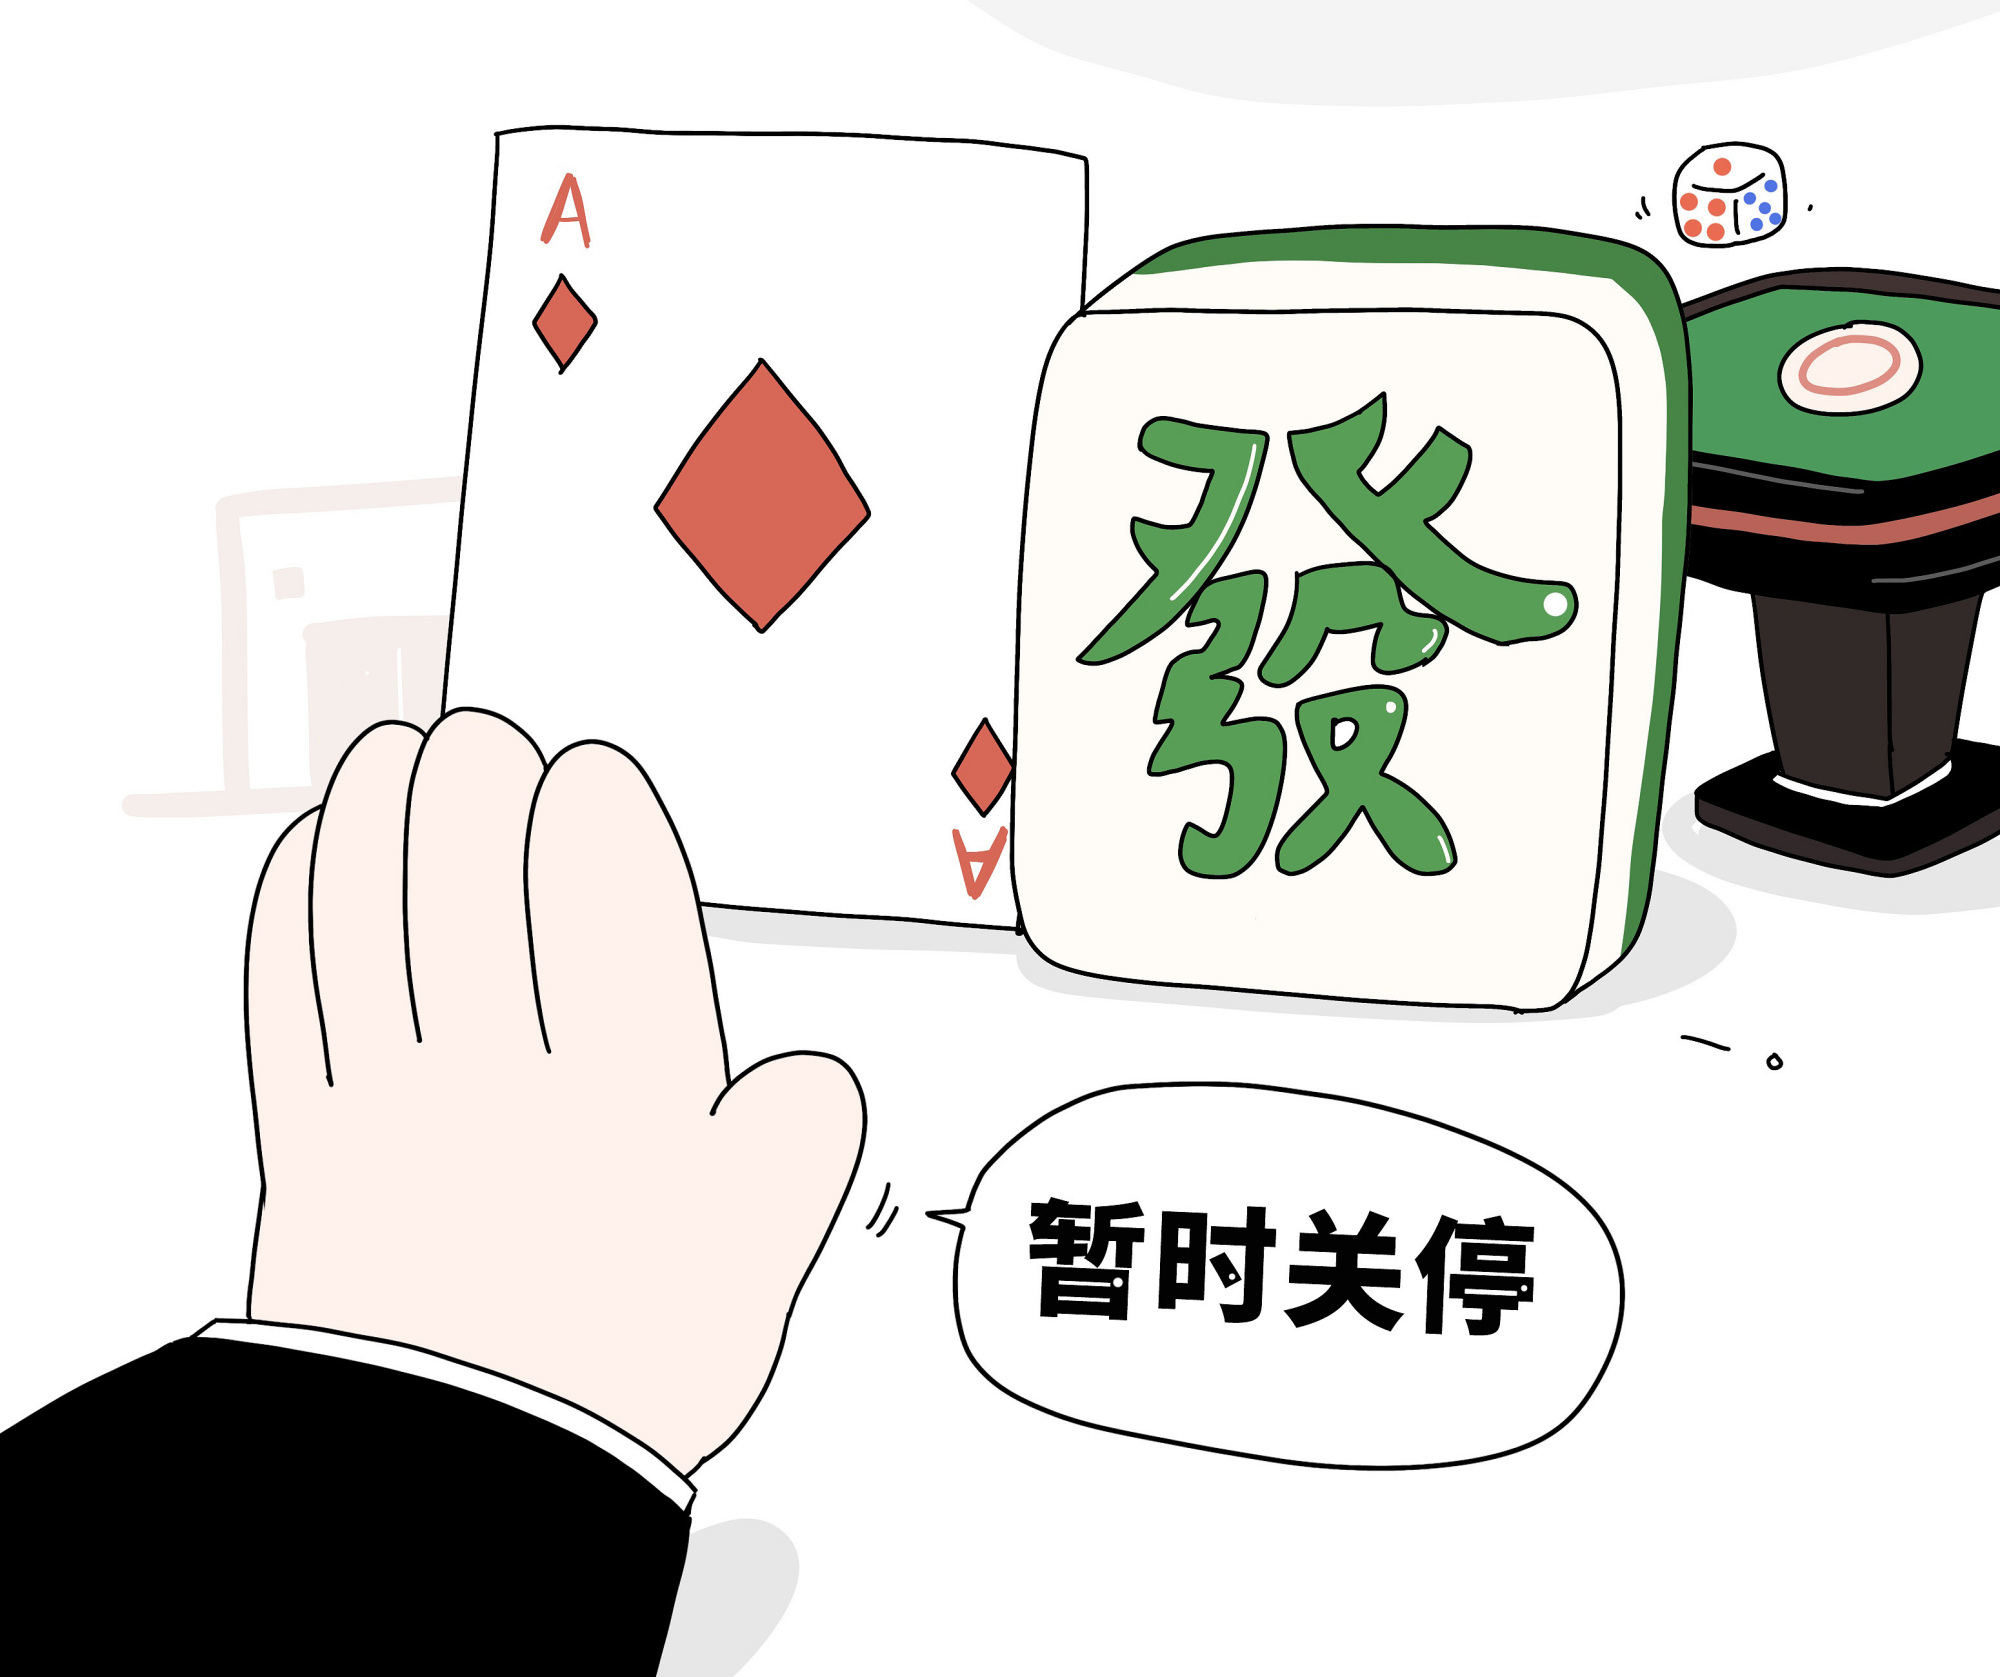 贵州又有两地发通告:麻将馆棋牌室暂停营业